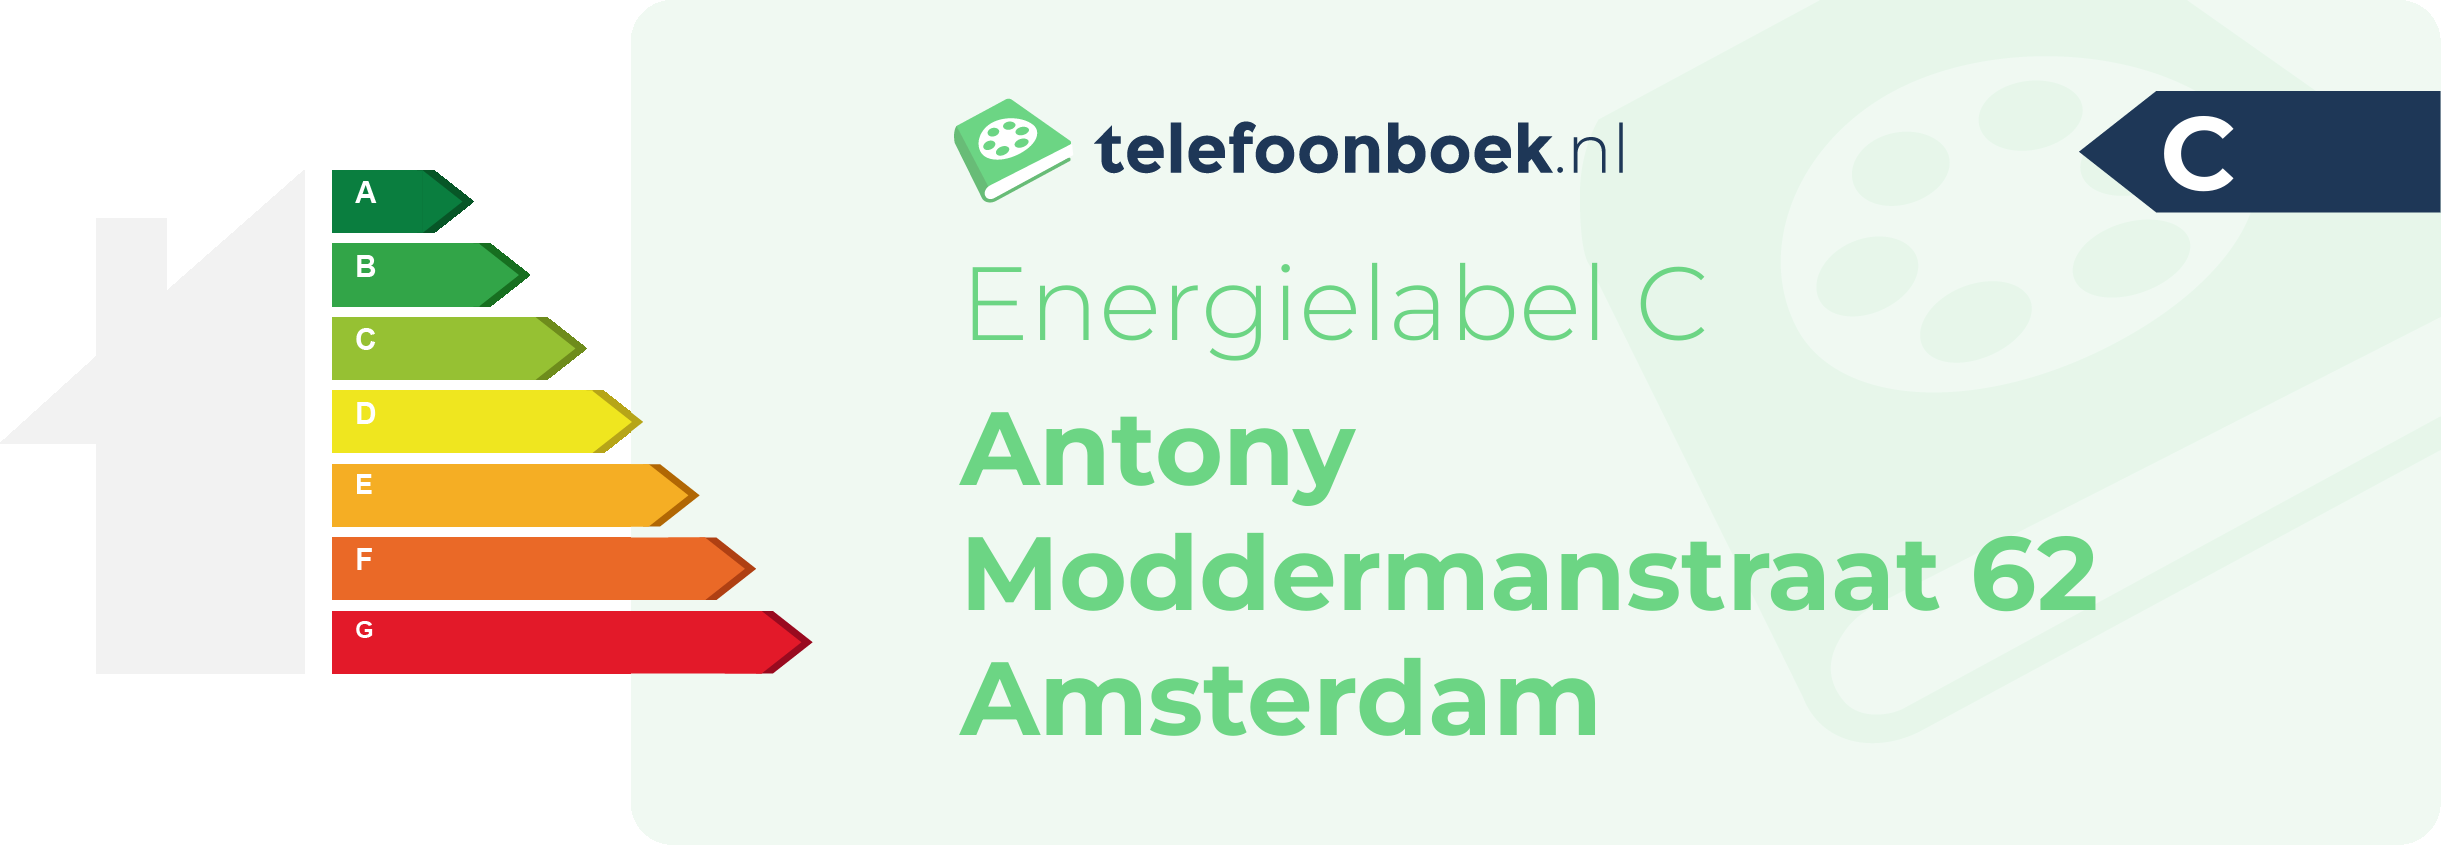 Energielabel Antony Moddermanstraat 62 Amsterdam